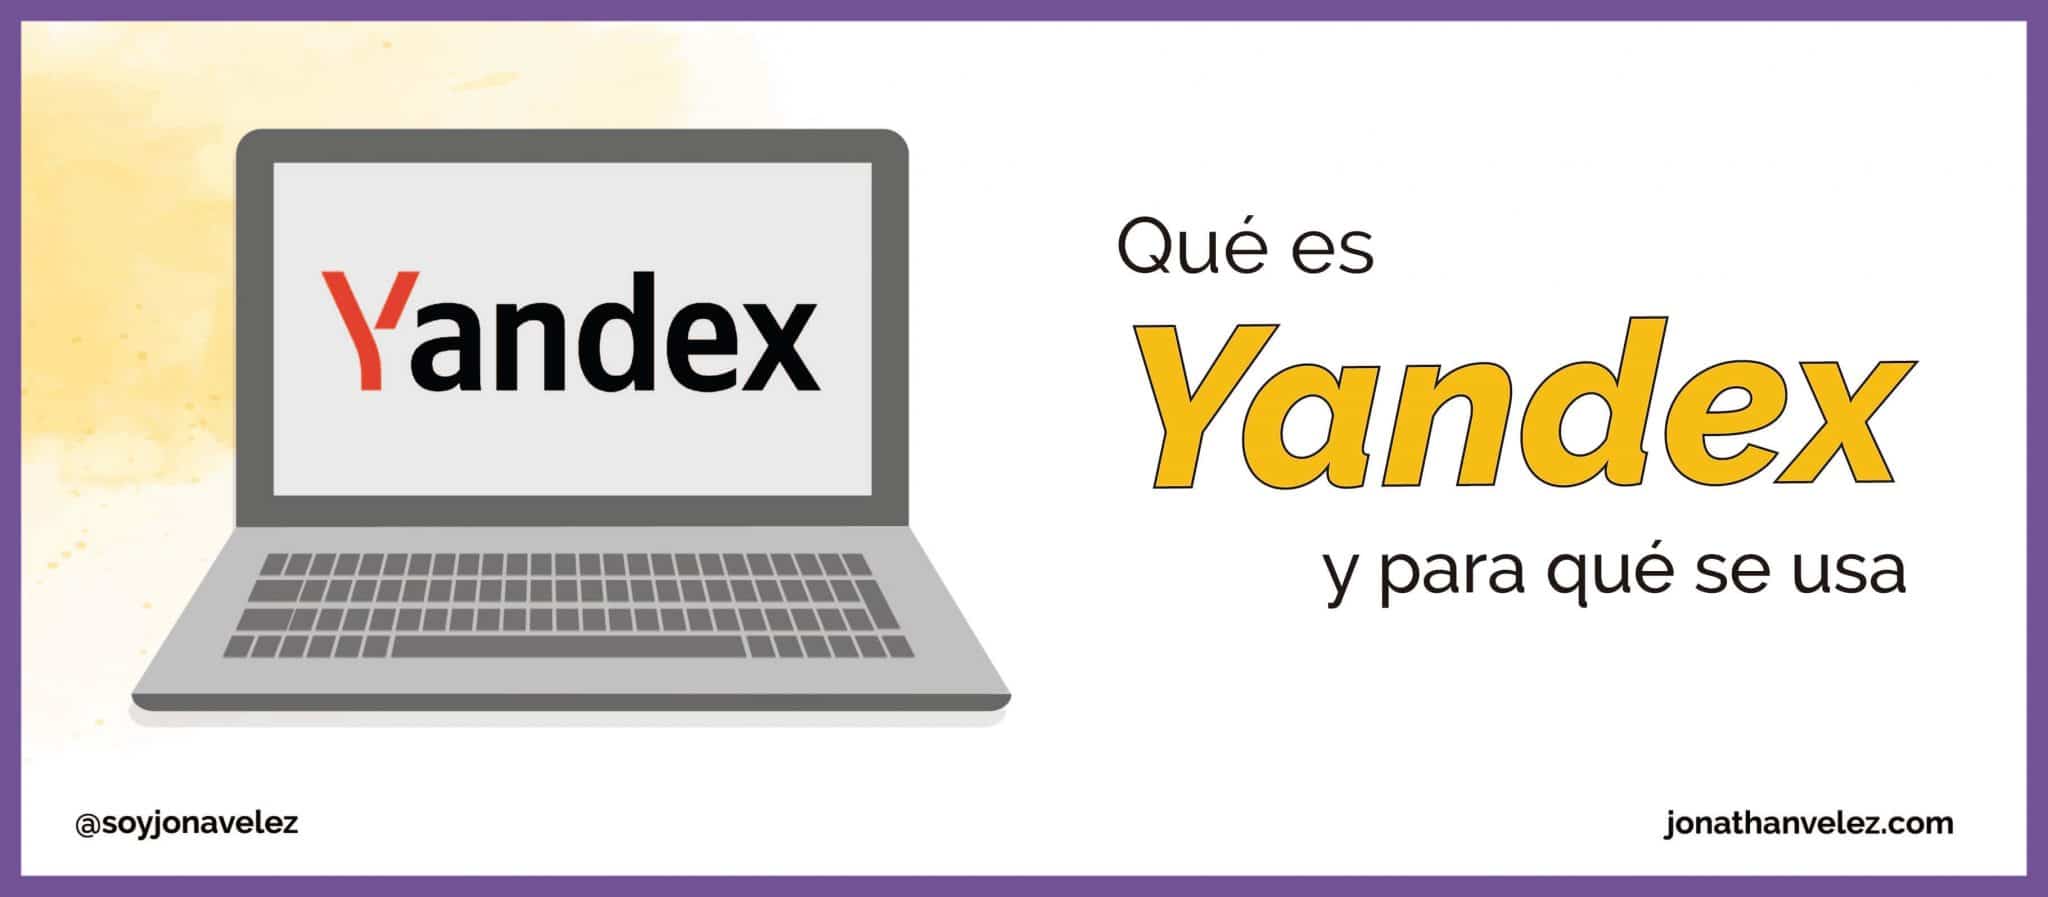 ¿Qué es Yandex y para qué se utiliza?